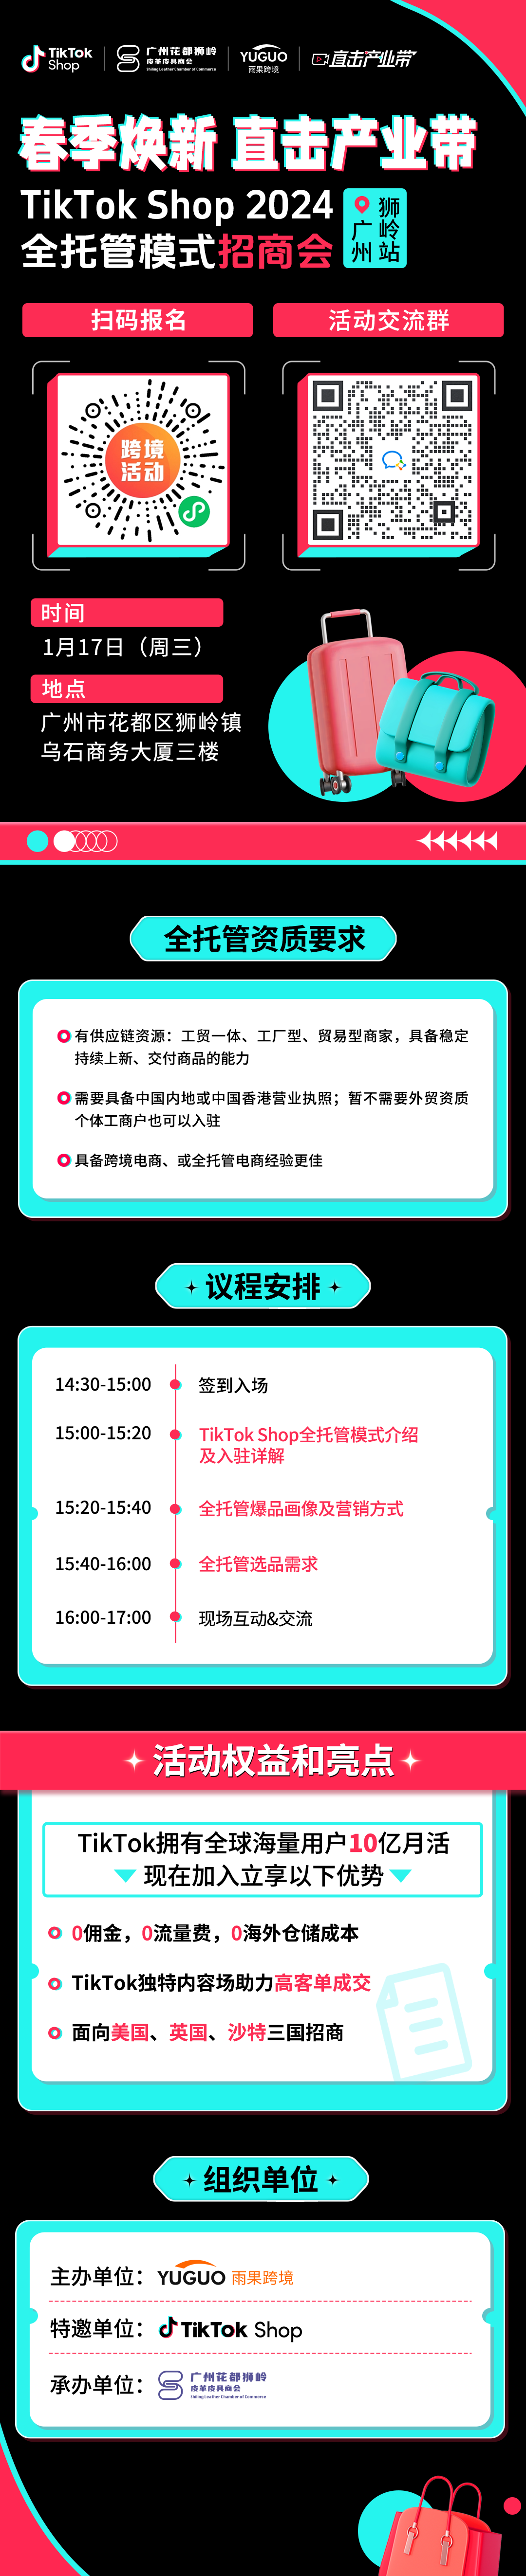 【已结束】TikTok Shop2024全托管模式招商会•广州狮岭站